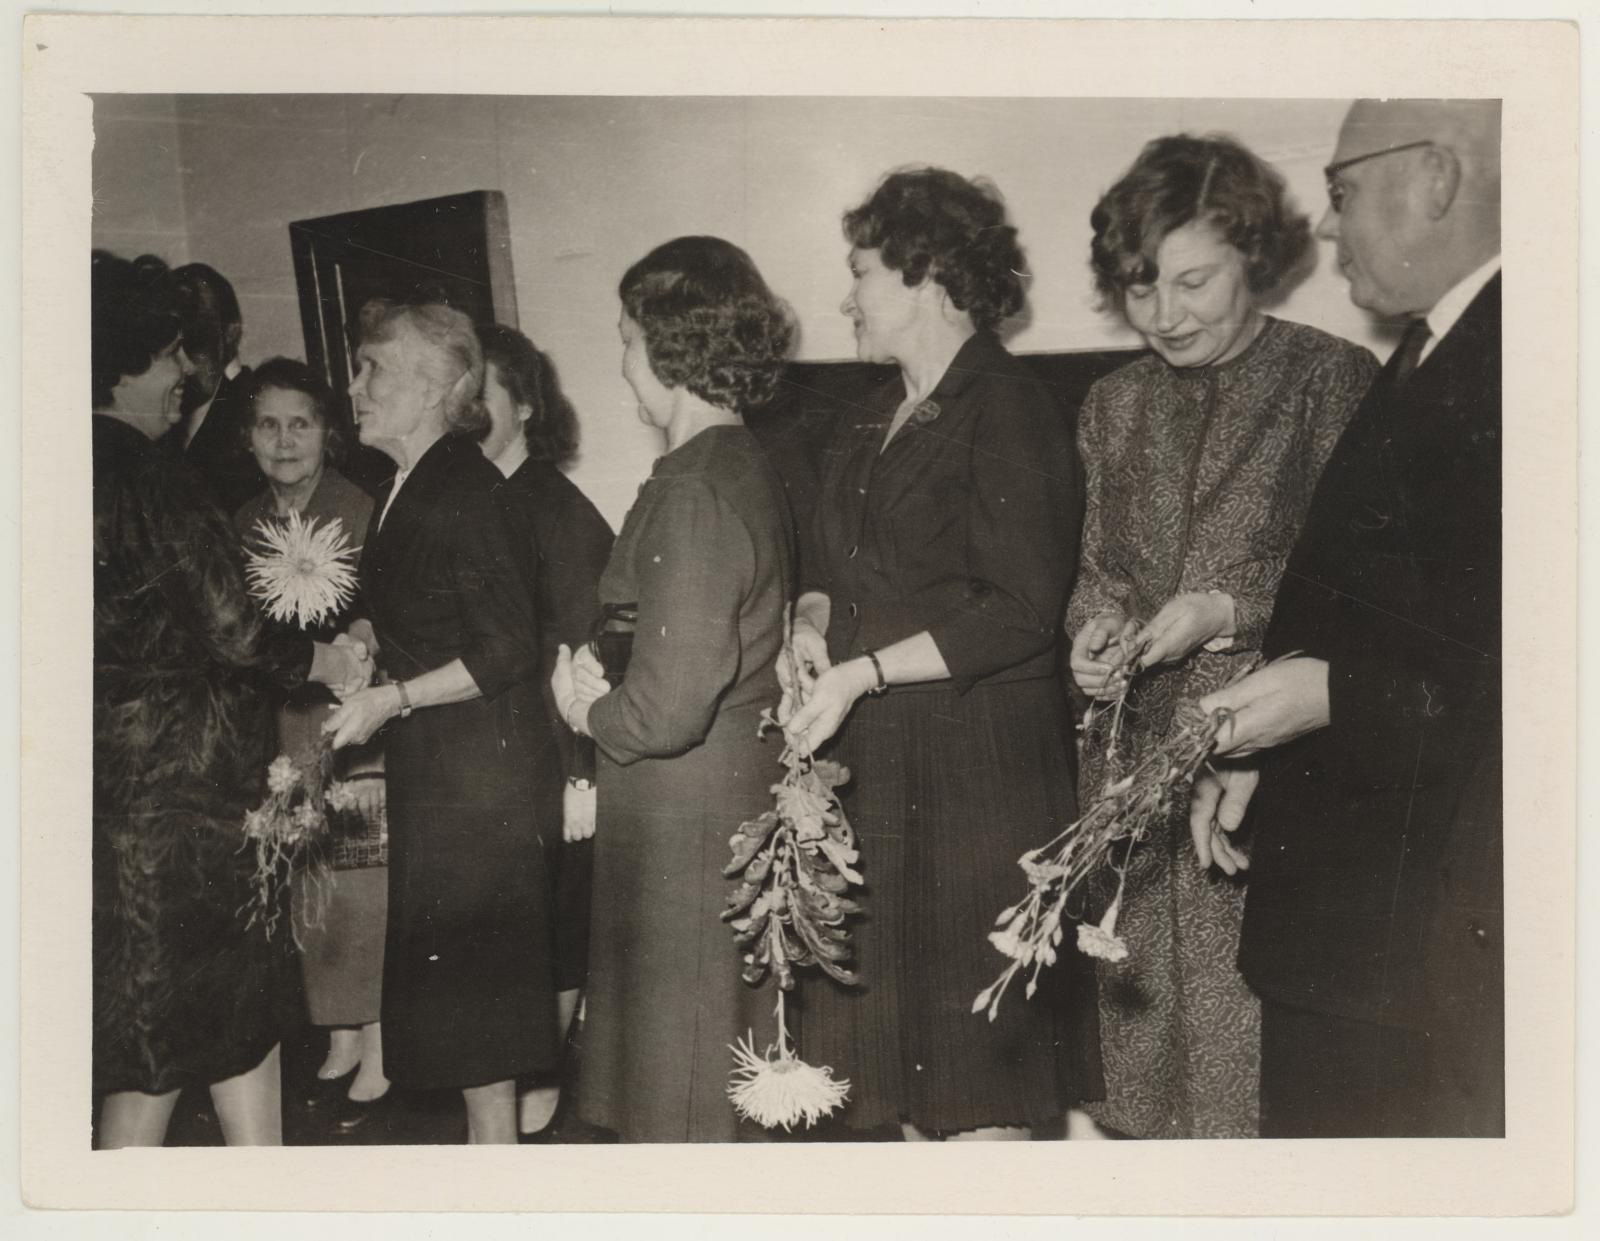 Vanema teadusliku töötaja Virve Hinnovi 50. a. juubeli tähistamine 30. okt. 1965. Endine vanemraamatupidaja Juuli Luke õnnitleb juubilari.